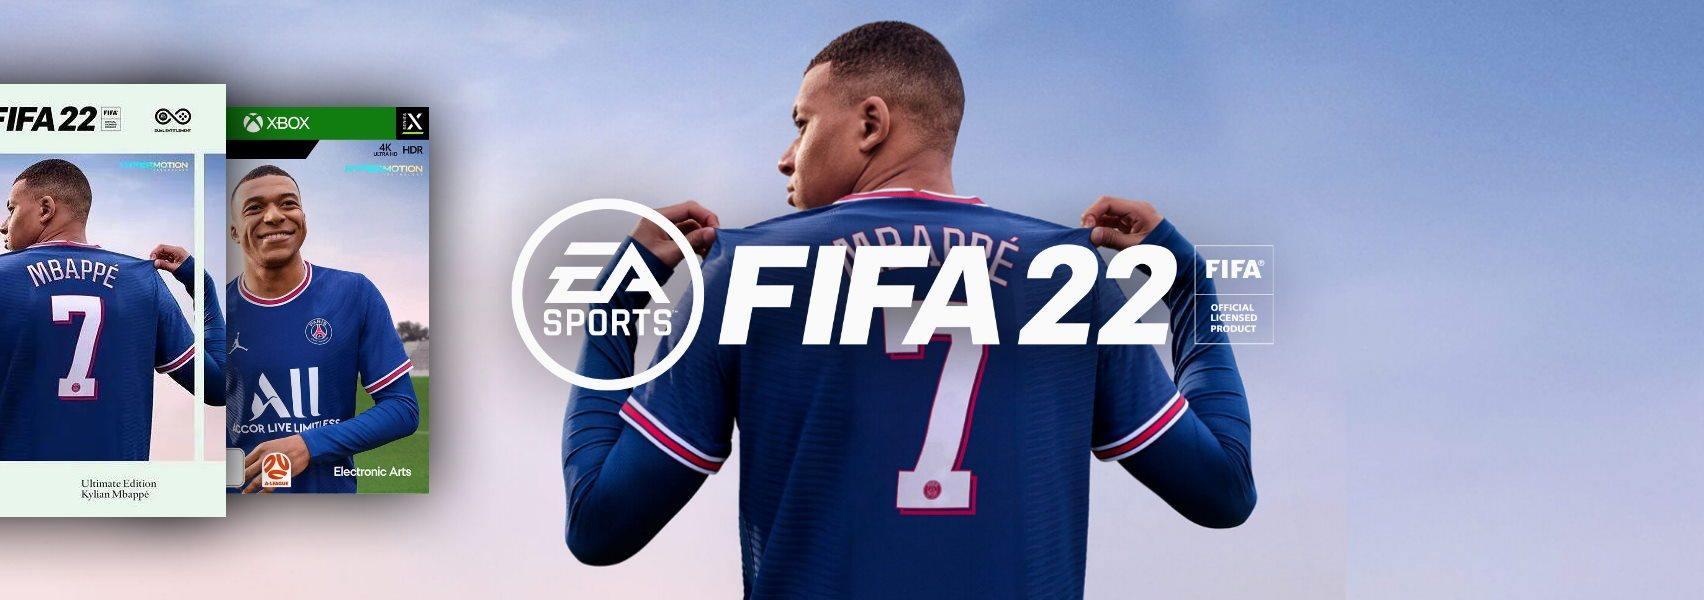 פיפא 22 | FIFA 22 - EXON - גיימינג ותוכנות - משחקים ותוכנות למחשב ולאקס בוקס!